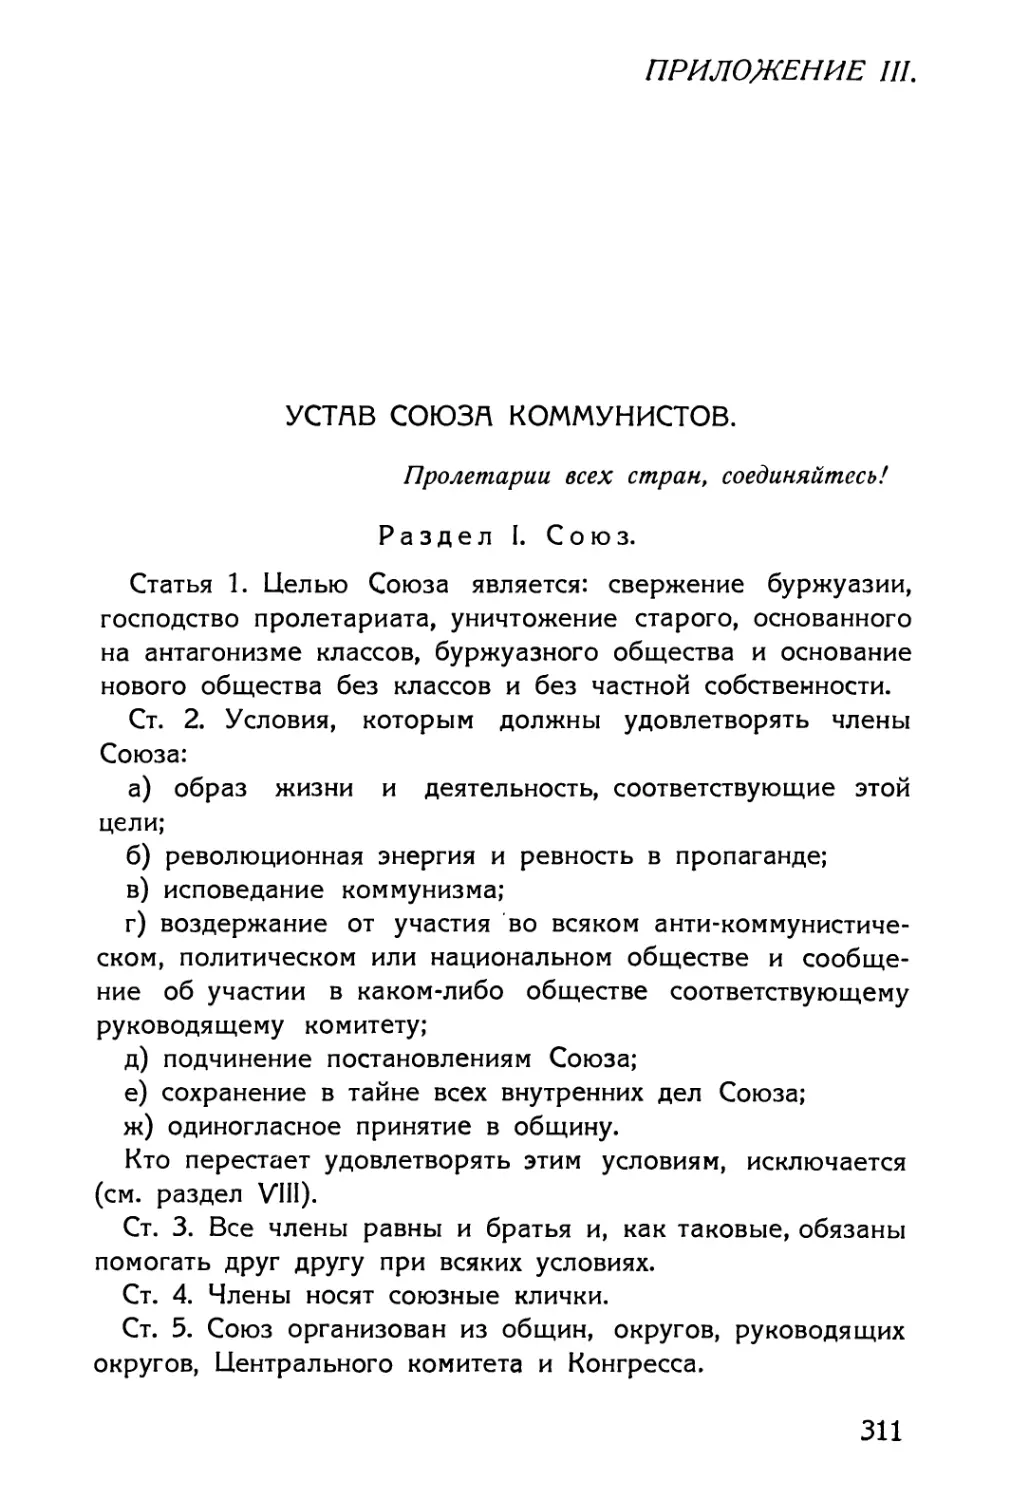 III. Устав Союза коммунистов